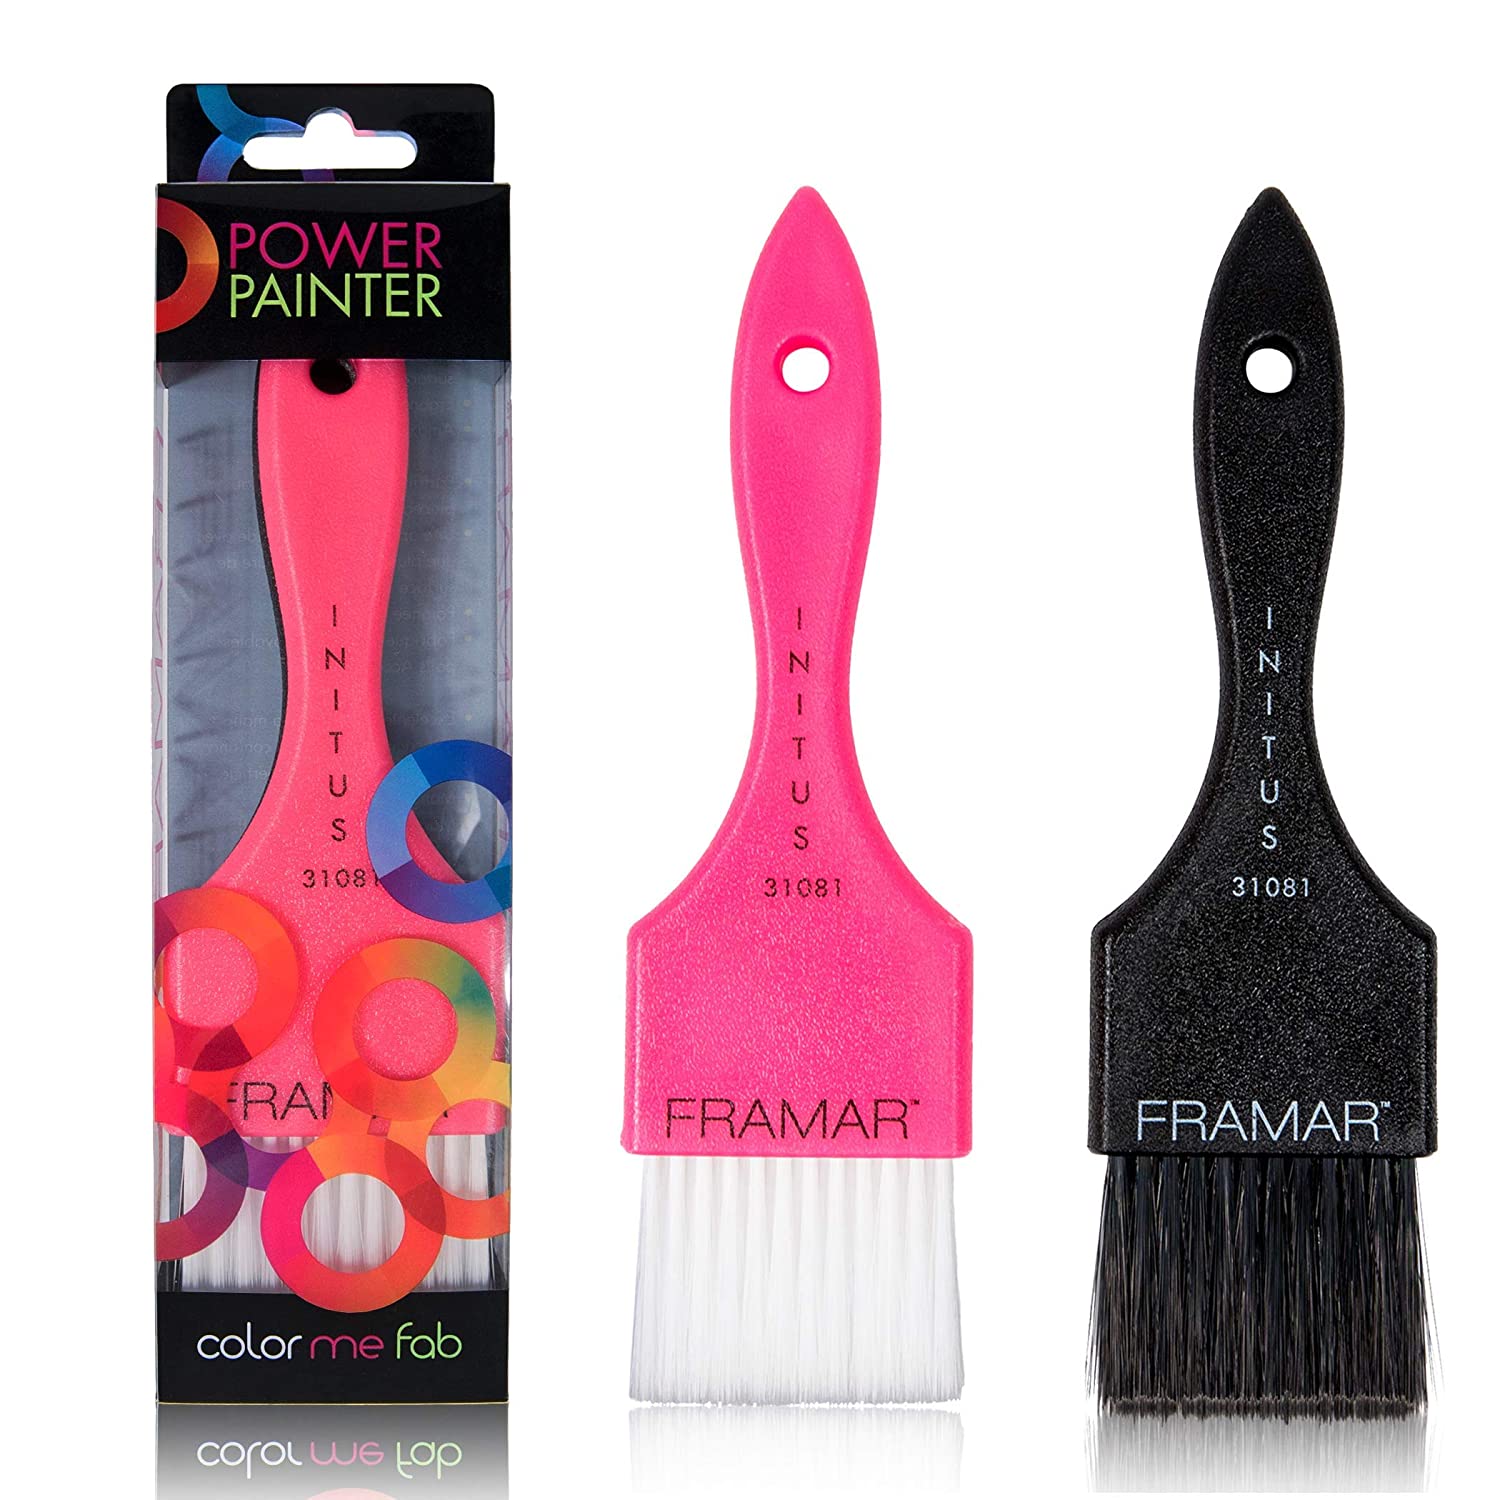 Power painter hair brush -Brochas framar